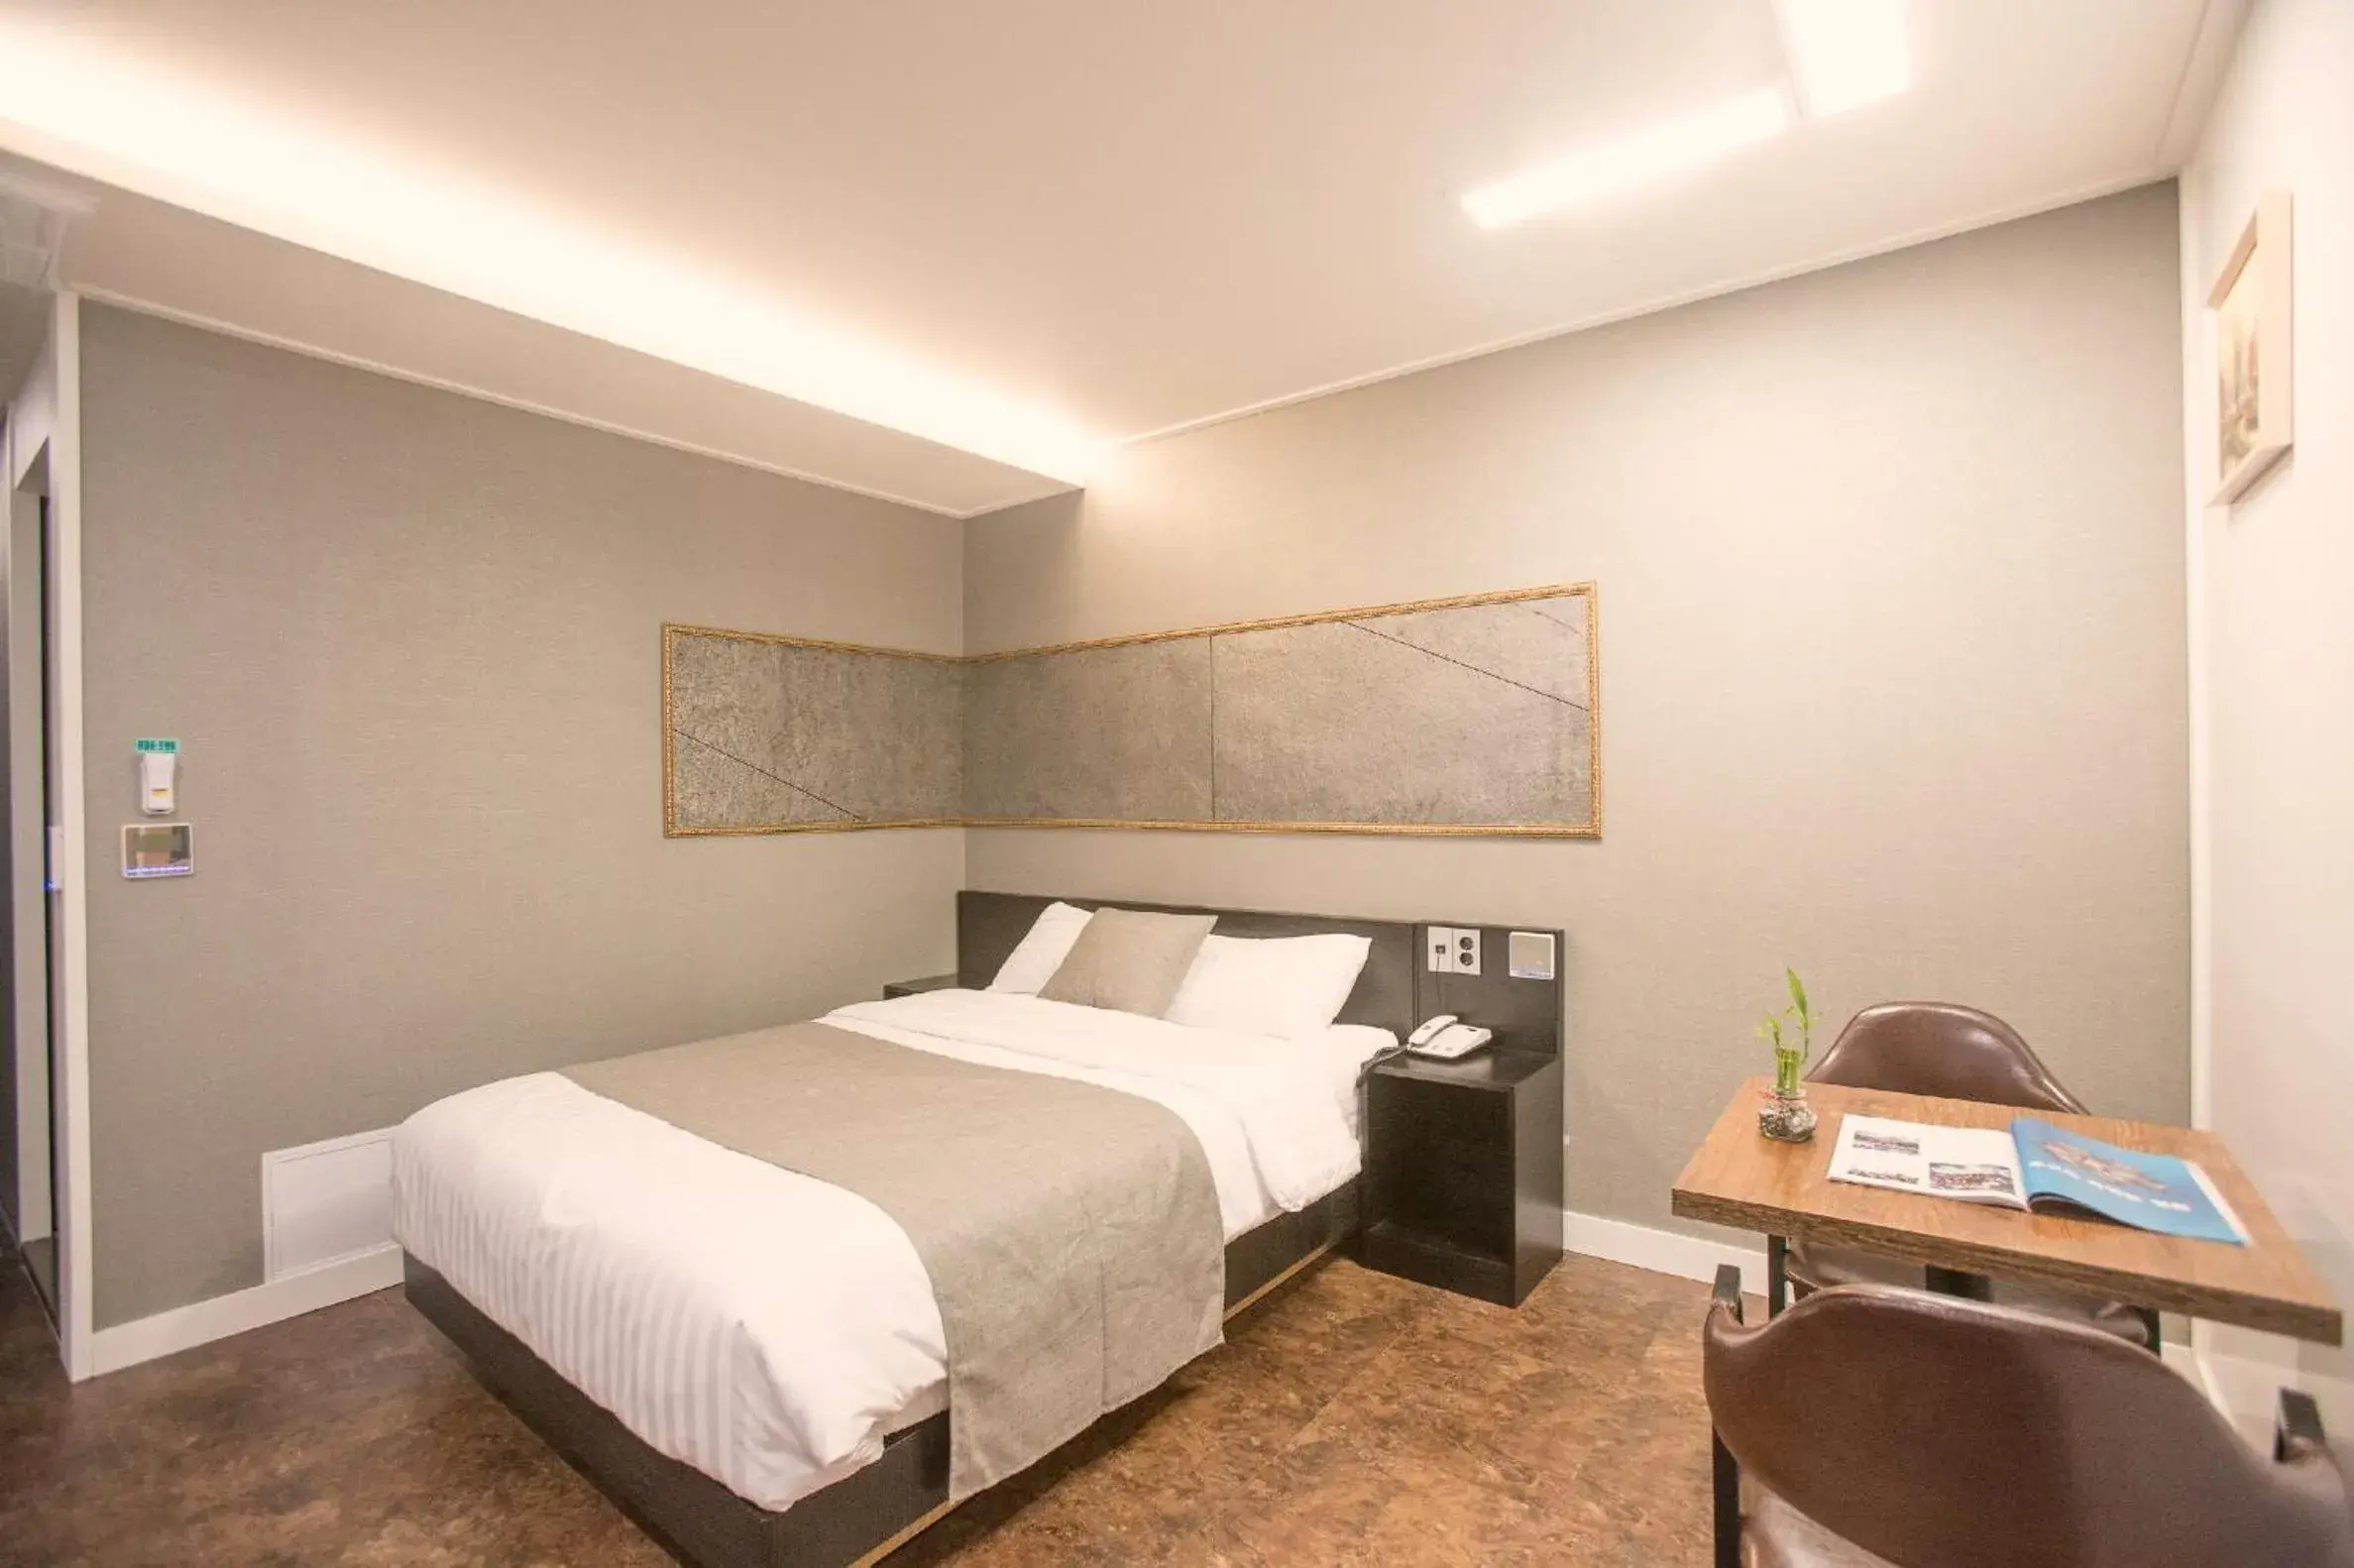 Decorative detail, Room Photo in Hotel Major 2 Jeju